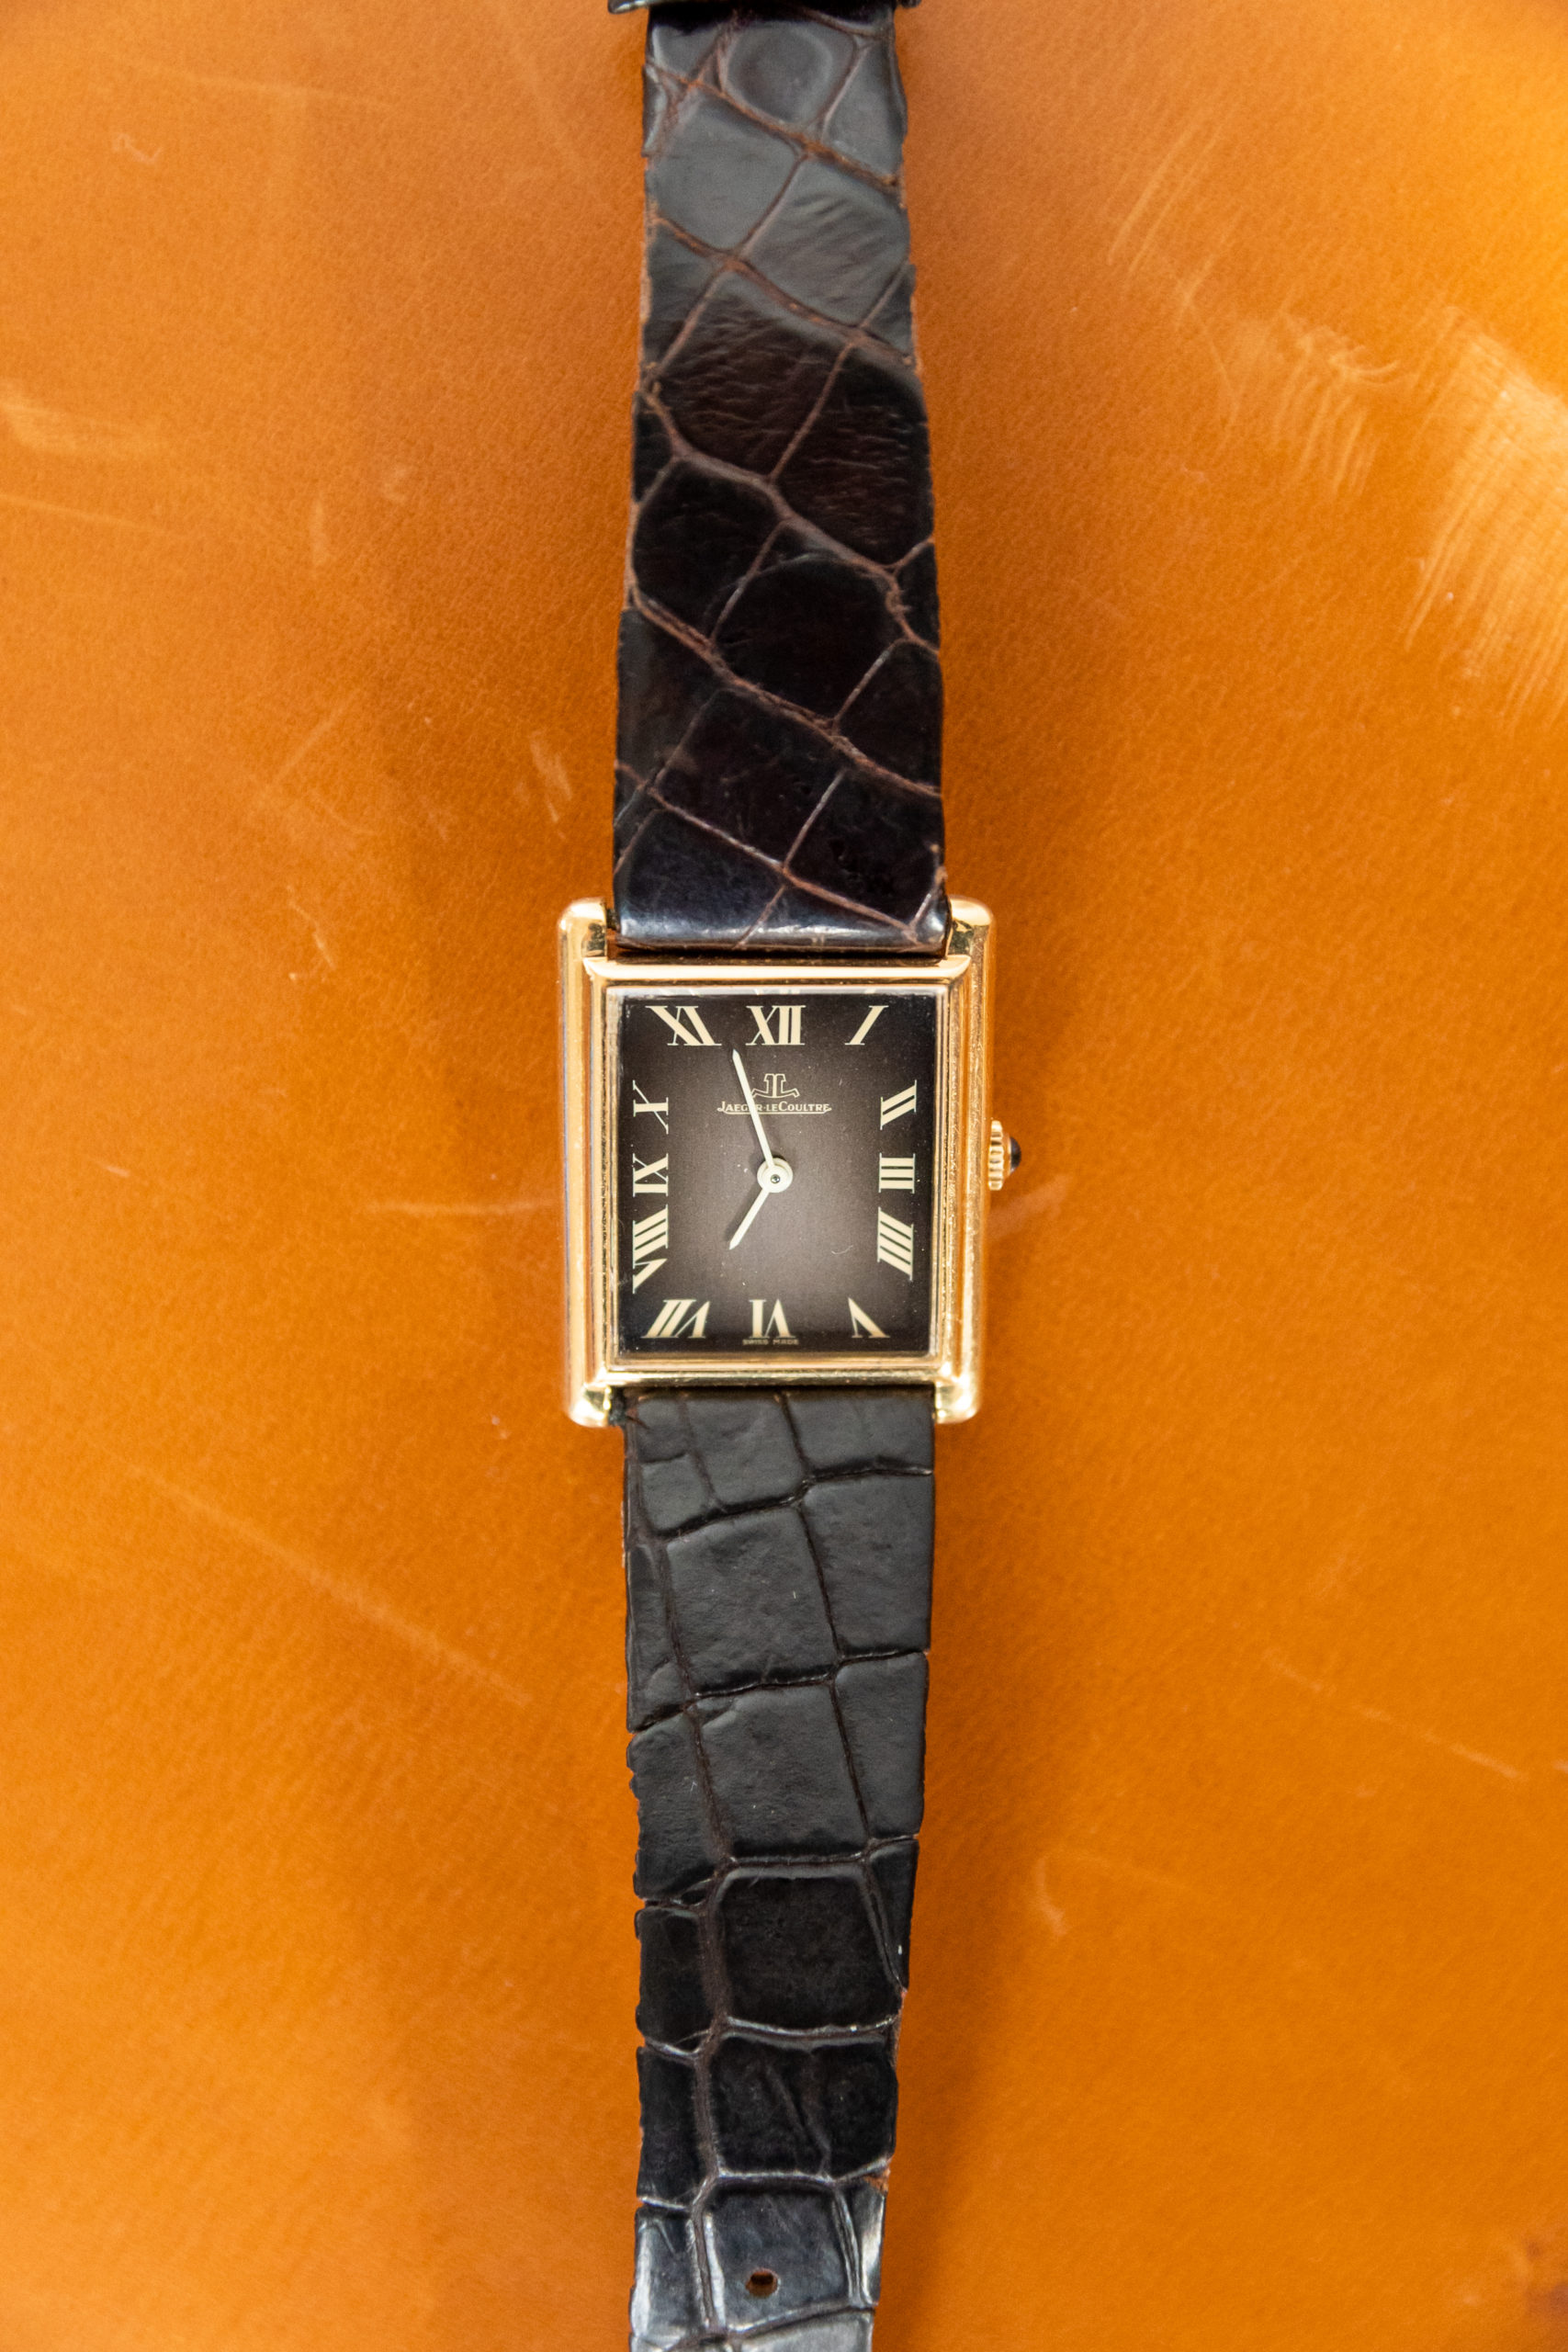 Jeager-lecoultre-homme-femme-collection-montre-vintage-or-aurore-morisse-chestret5-la-maison-de-chestret-liège-affaire-conclue3